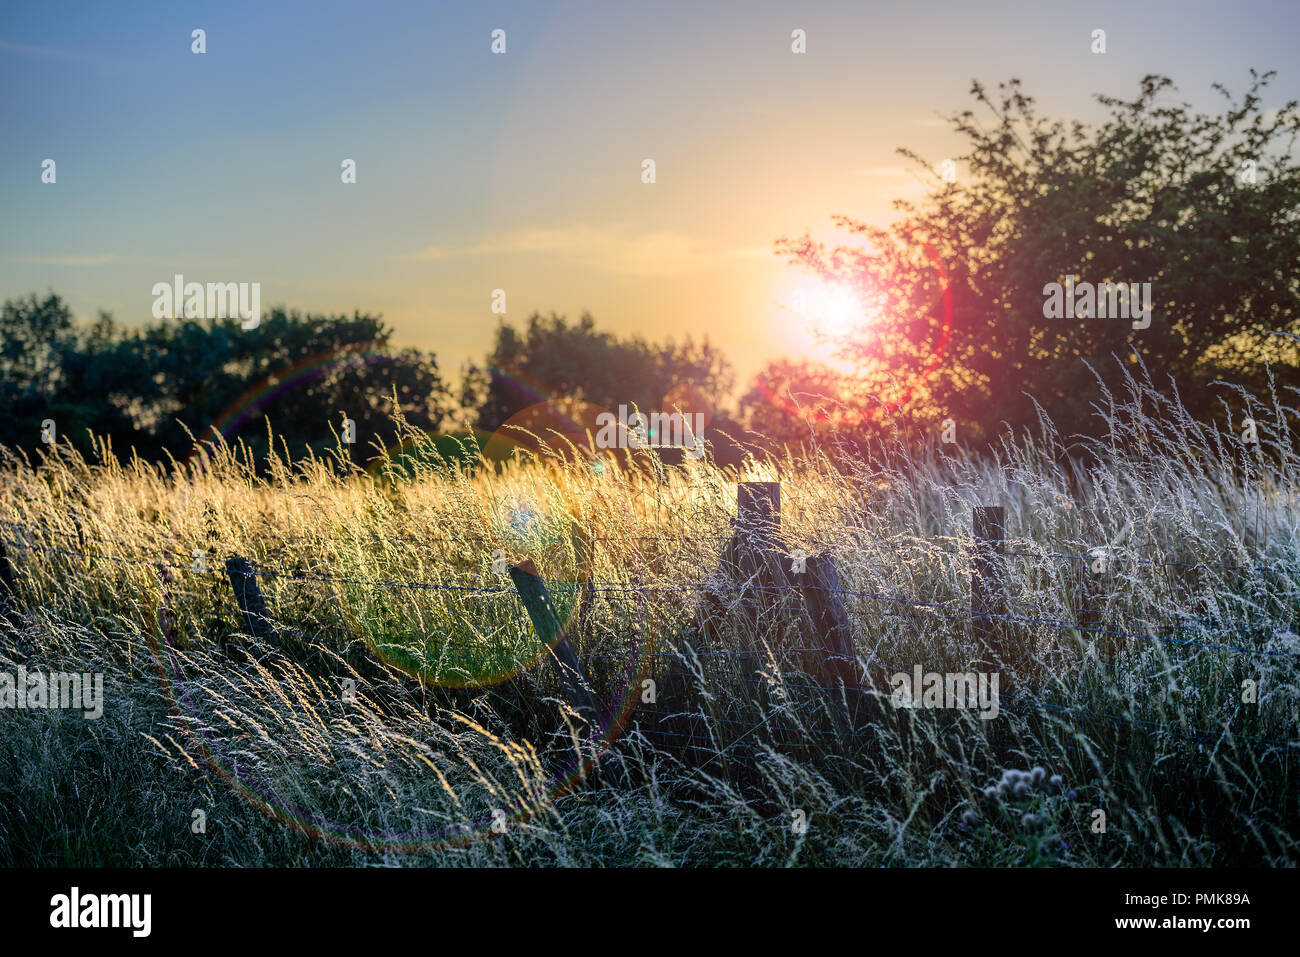 Juillet soleil à travers des arbres provoquant un chemin de lens flare avec de l'herbe haute se balançant dans la brise légère Banque D'Images